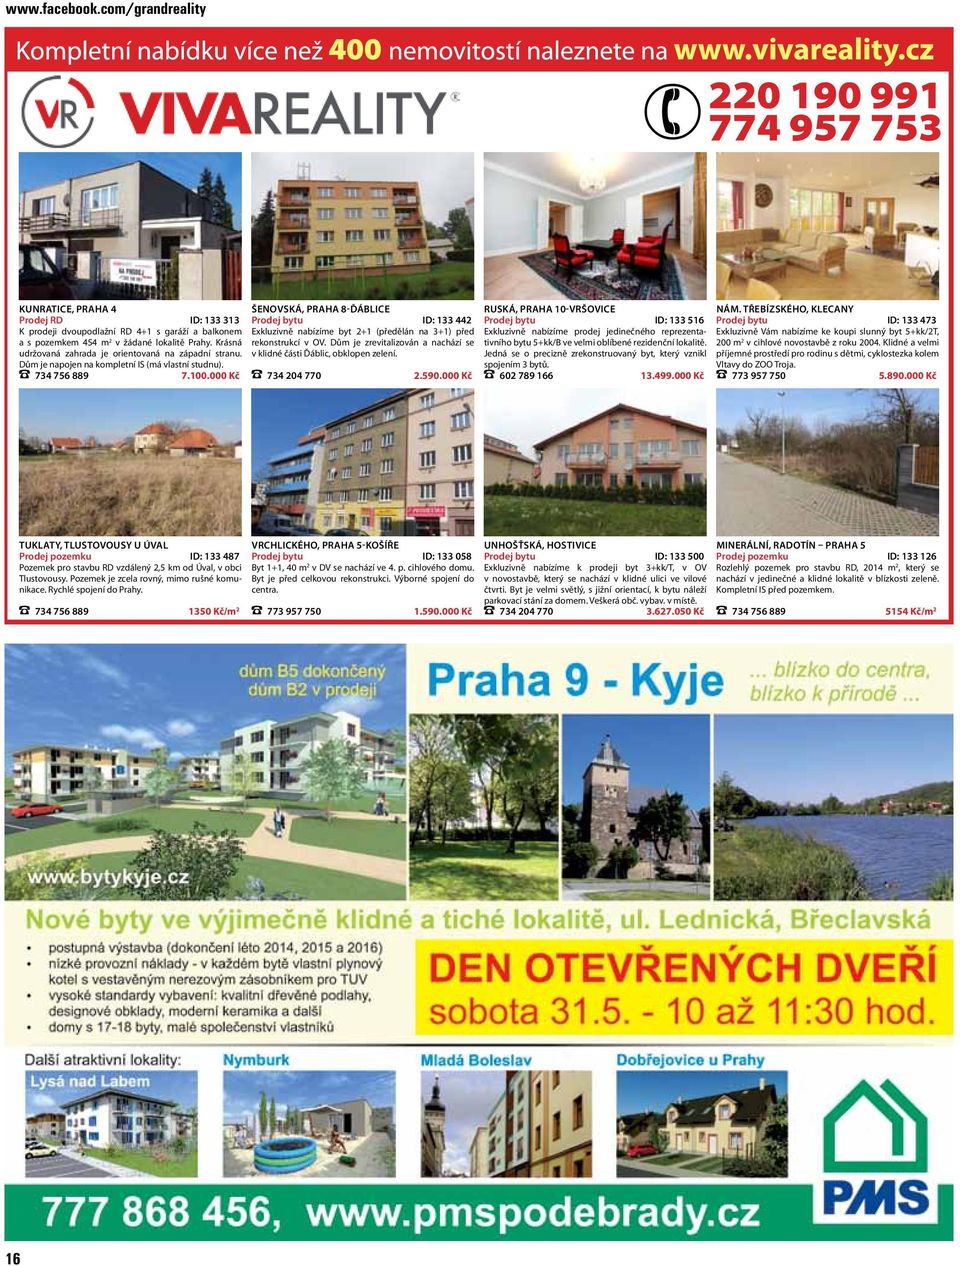 000 Kč ŠENOVSKÁ, PRAHA 8-ĎÁBLICE Prodej bytu ID: 133 442 Exkluzivně nabízíme byt 2+1 (předělán na 3+1) před rekonstrukcí v OV.